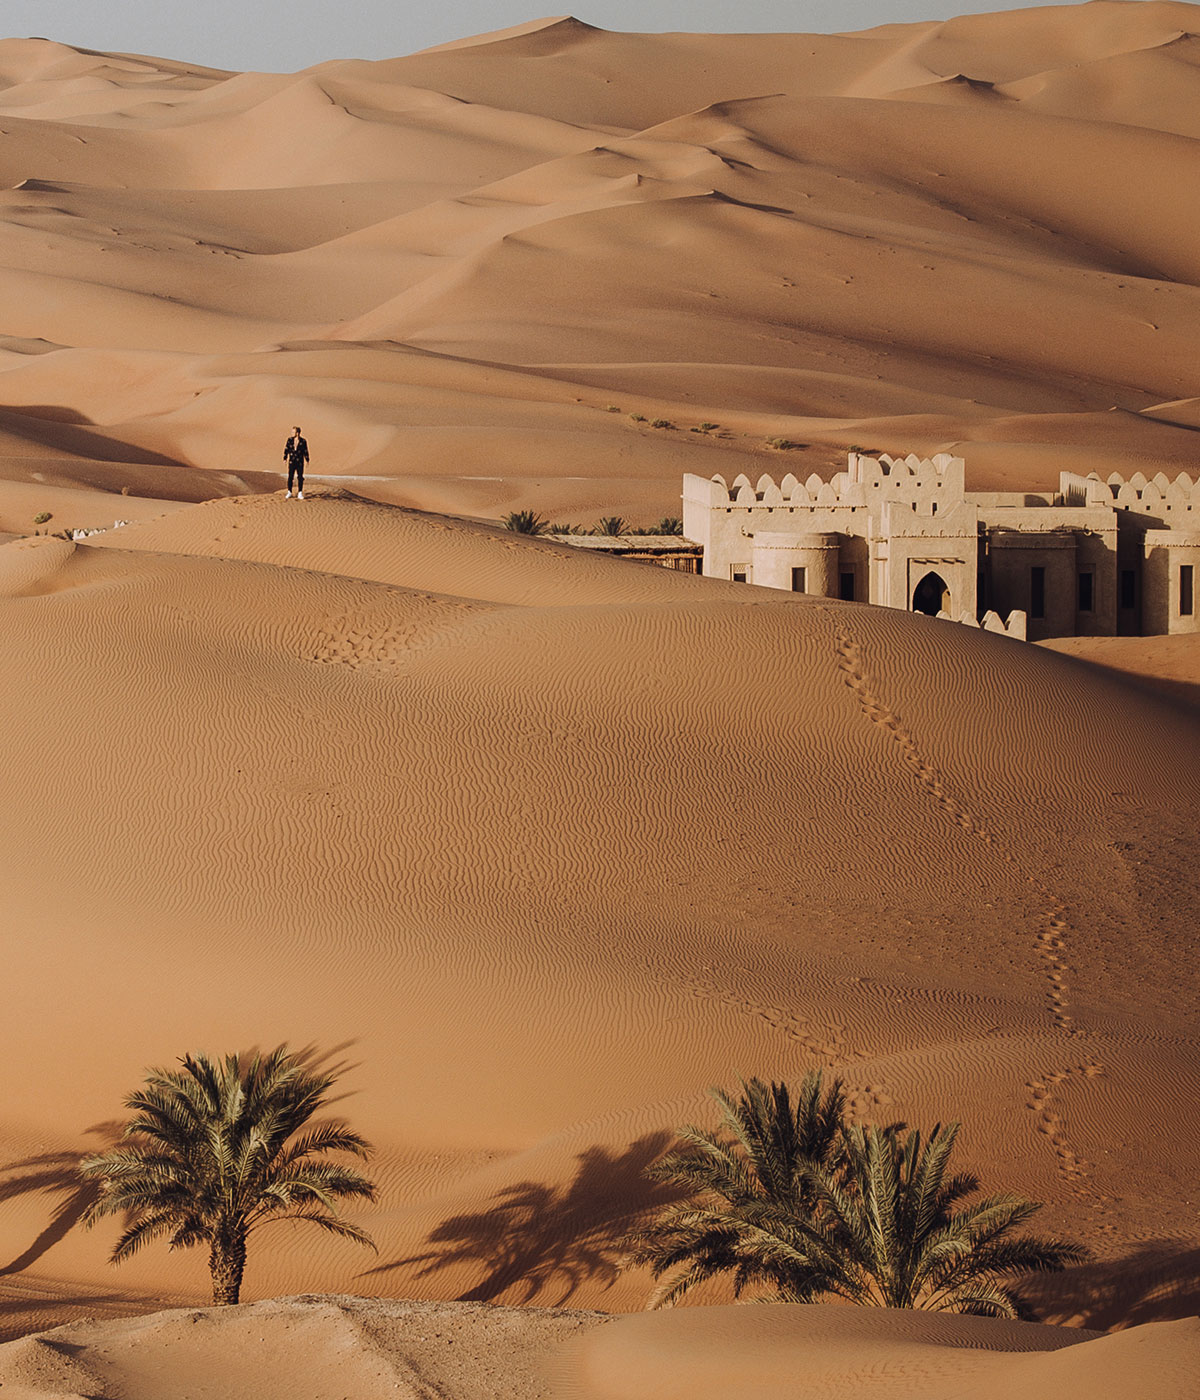 Dune de sable dans le climat sec et aride de l'Arabie, Abu Dhabi, Afrique Plein air